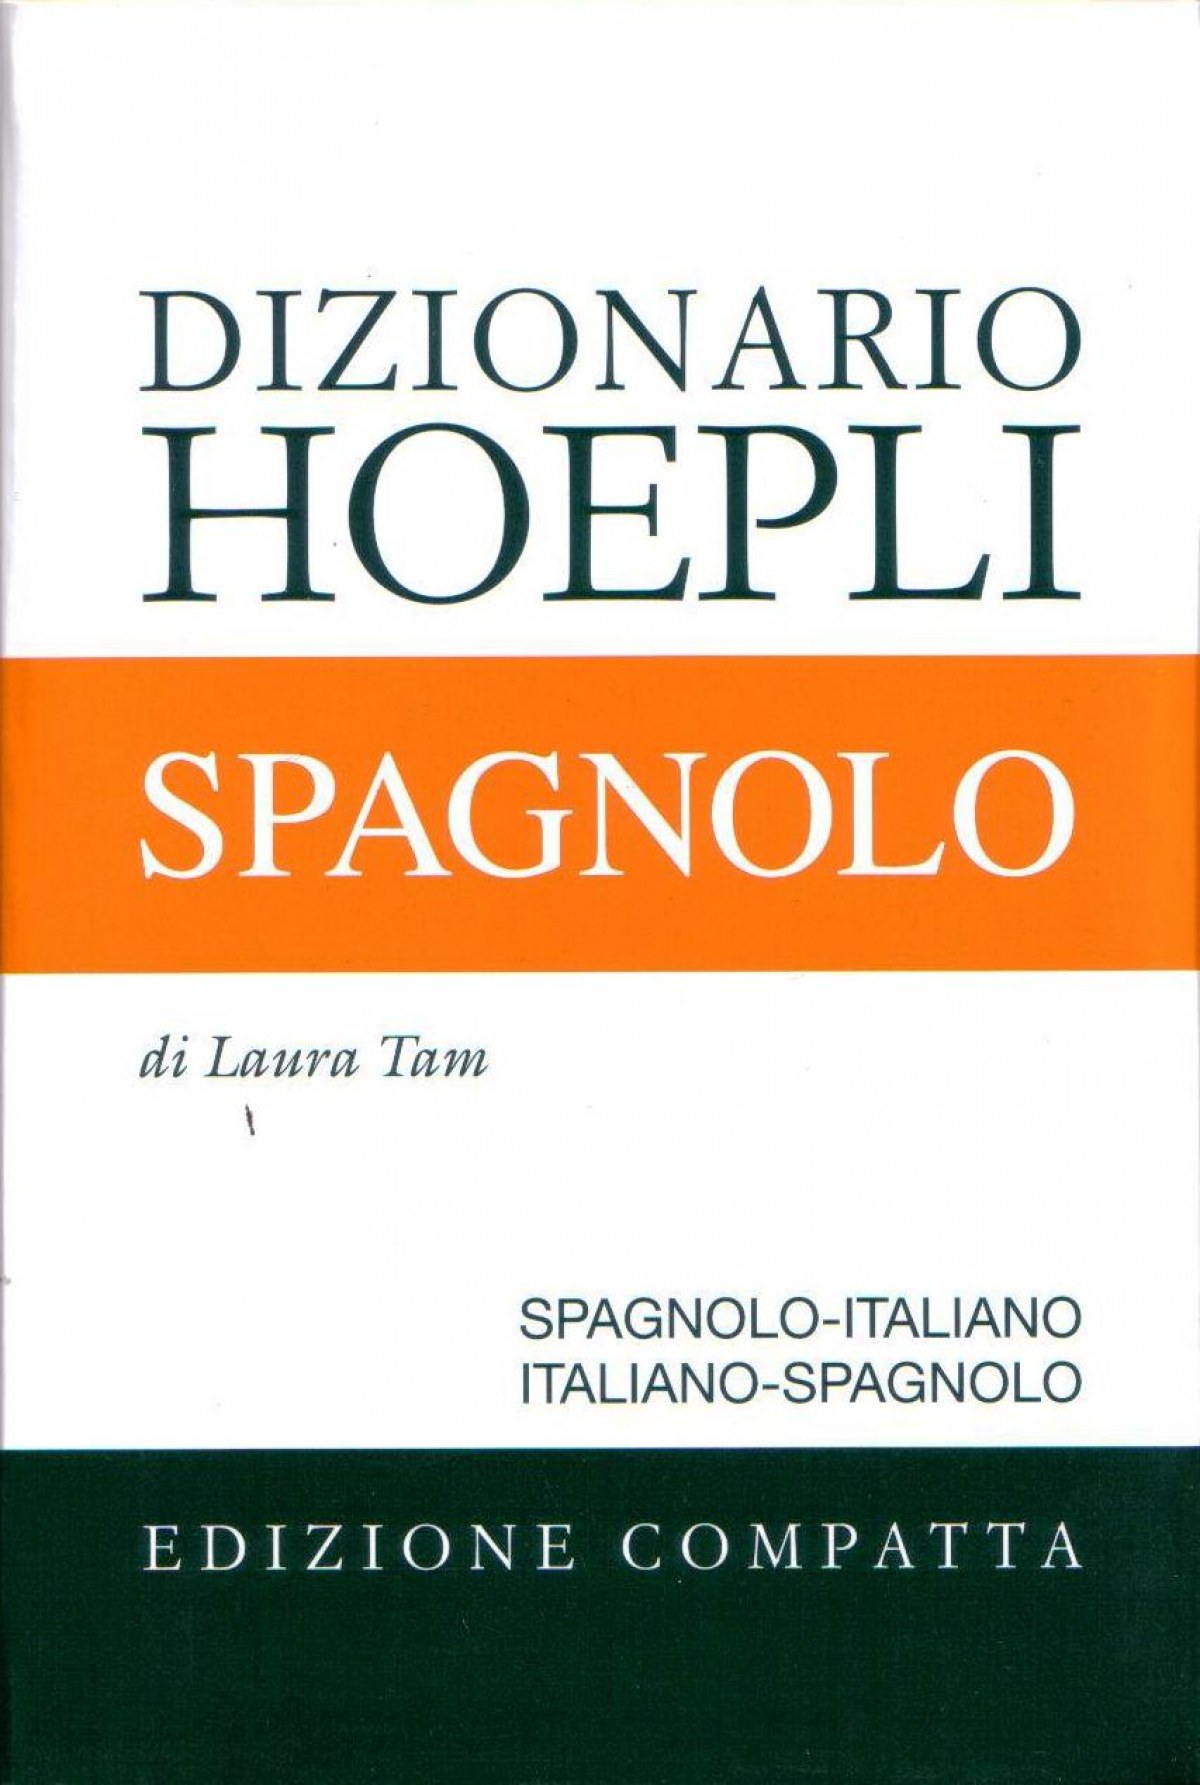 Dizionario Hoepli Spagnolo. Edizione compatta - Laura, Tam